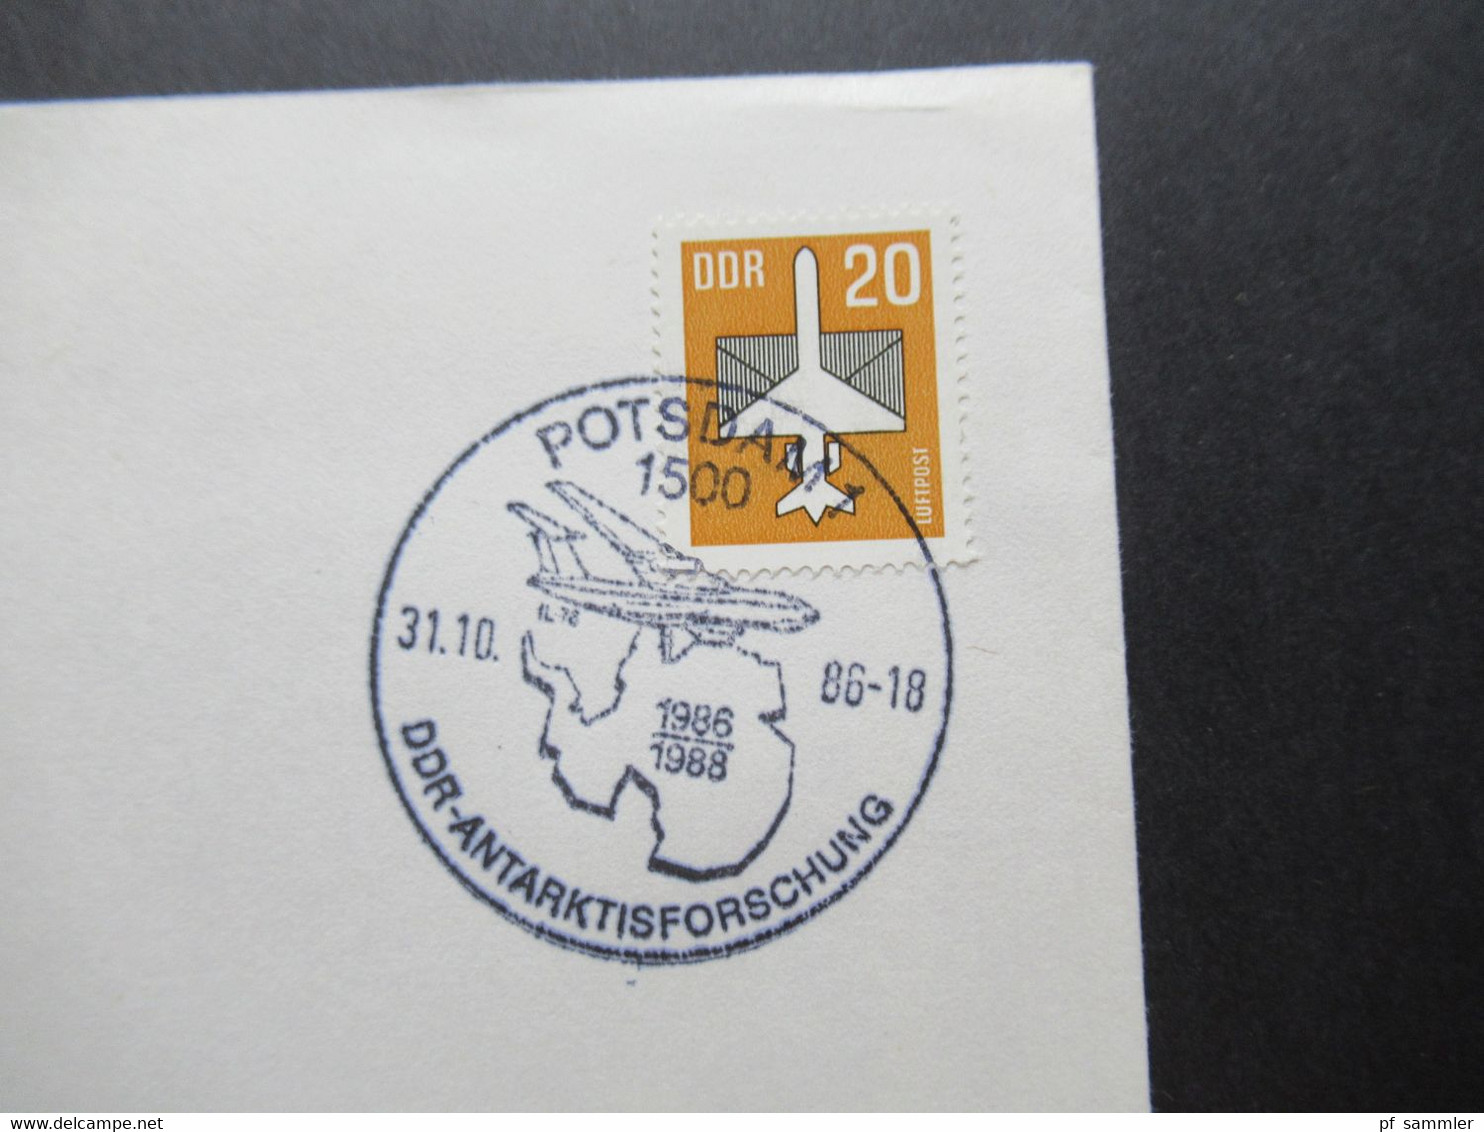 DDR 1980er Jahre 3x Polarpost Amundsen / Antarktisforschung DDR - UdSSR und British Antarctic Territory. Sonderbelege